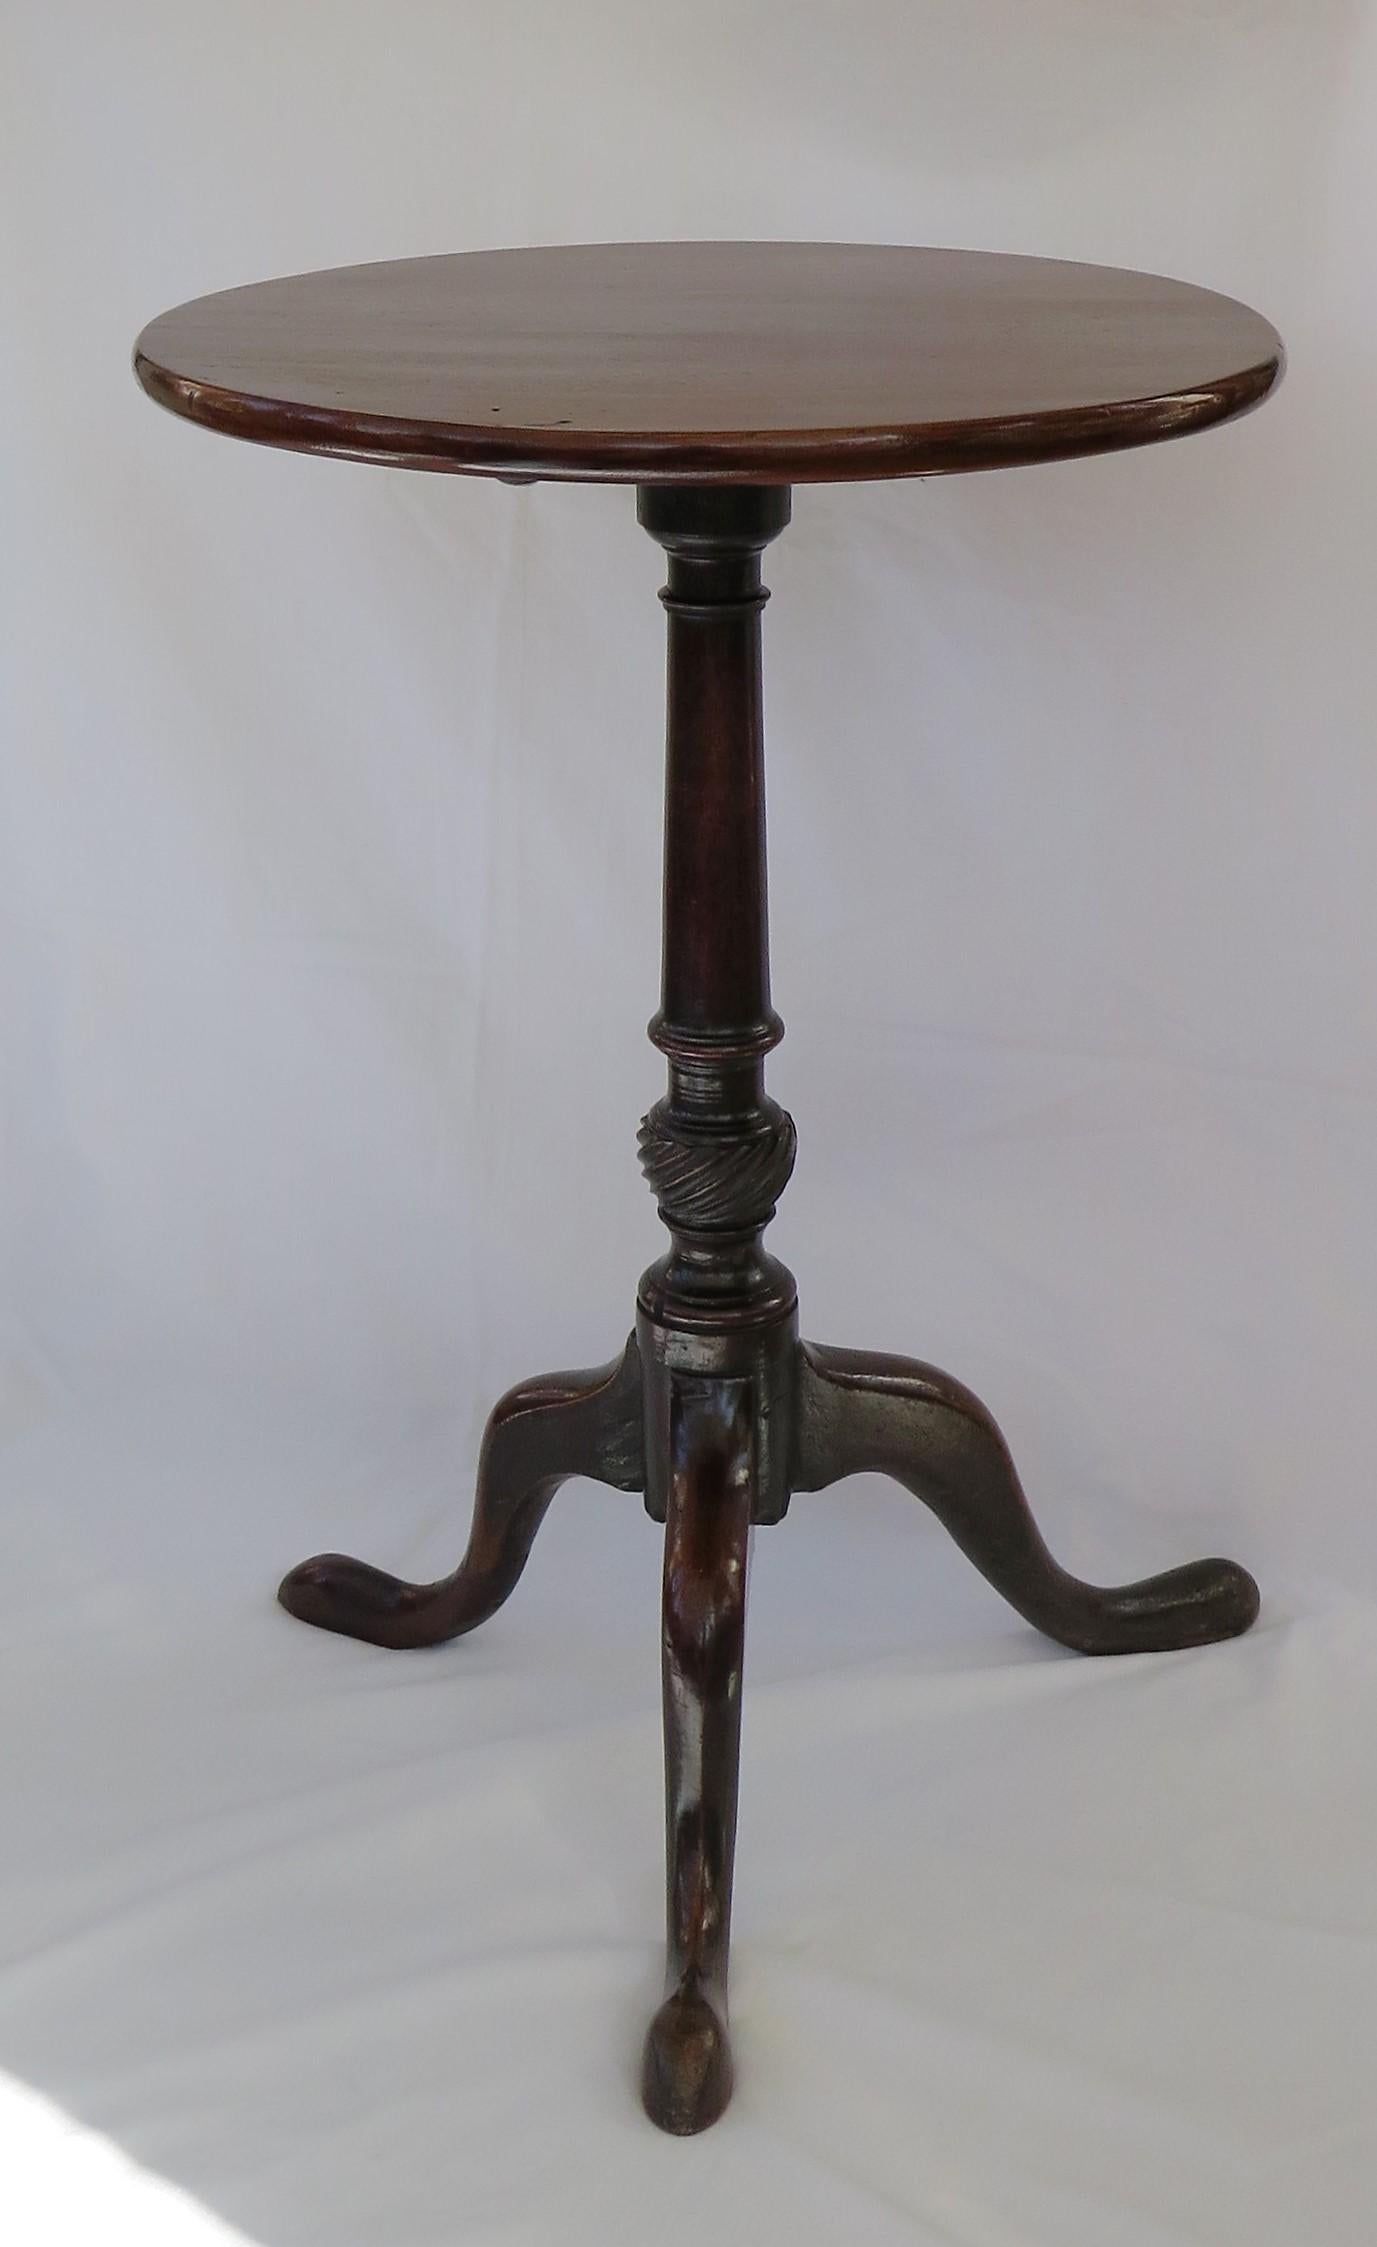 Es handelt sich um einen eleganten und schön proportionierten Dreibein- oder Weintisch aus massivem Hartholz, möglicherweise aus Nussbaum, mit einer kippbaren Platte. Er stammt aus der mittleren georgianischen Chippendale-Periode, um 1760.

Die